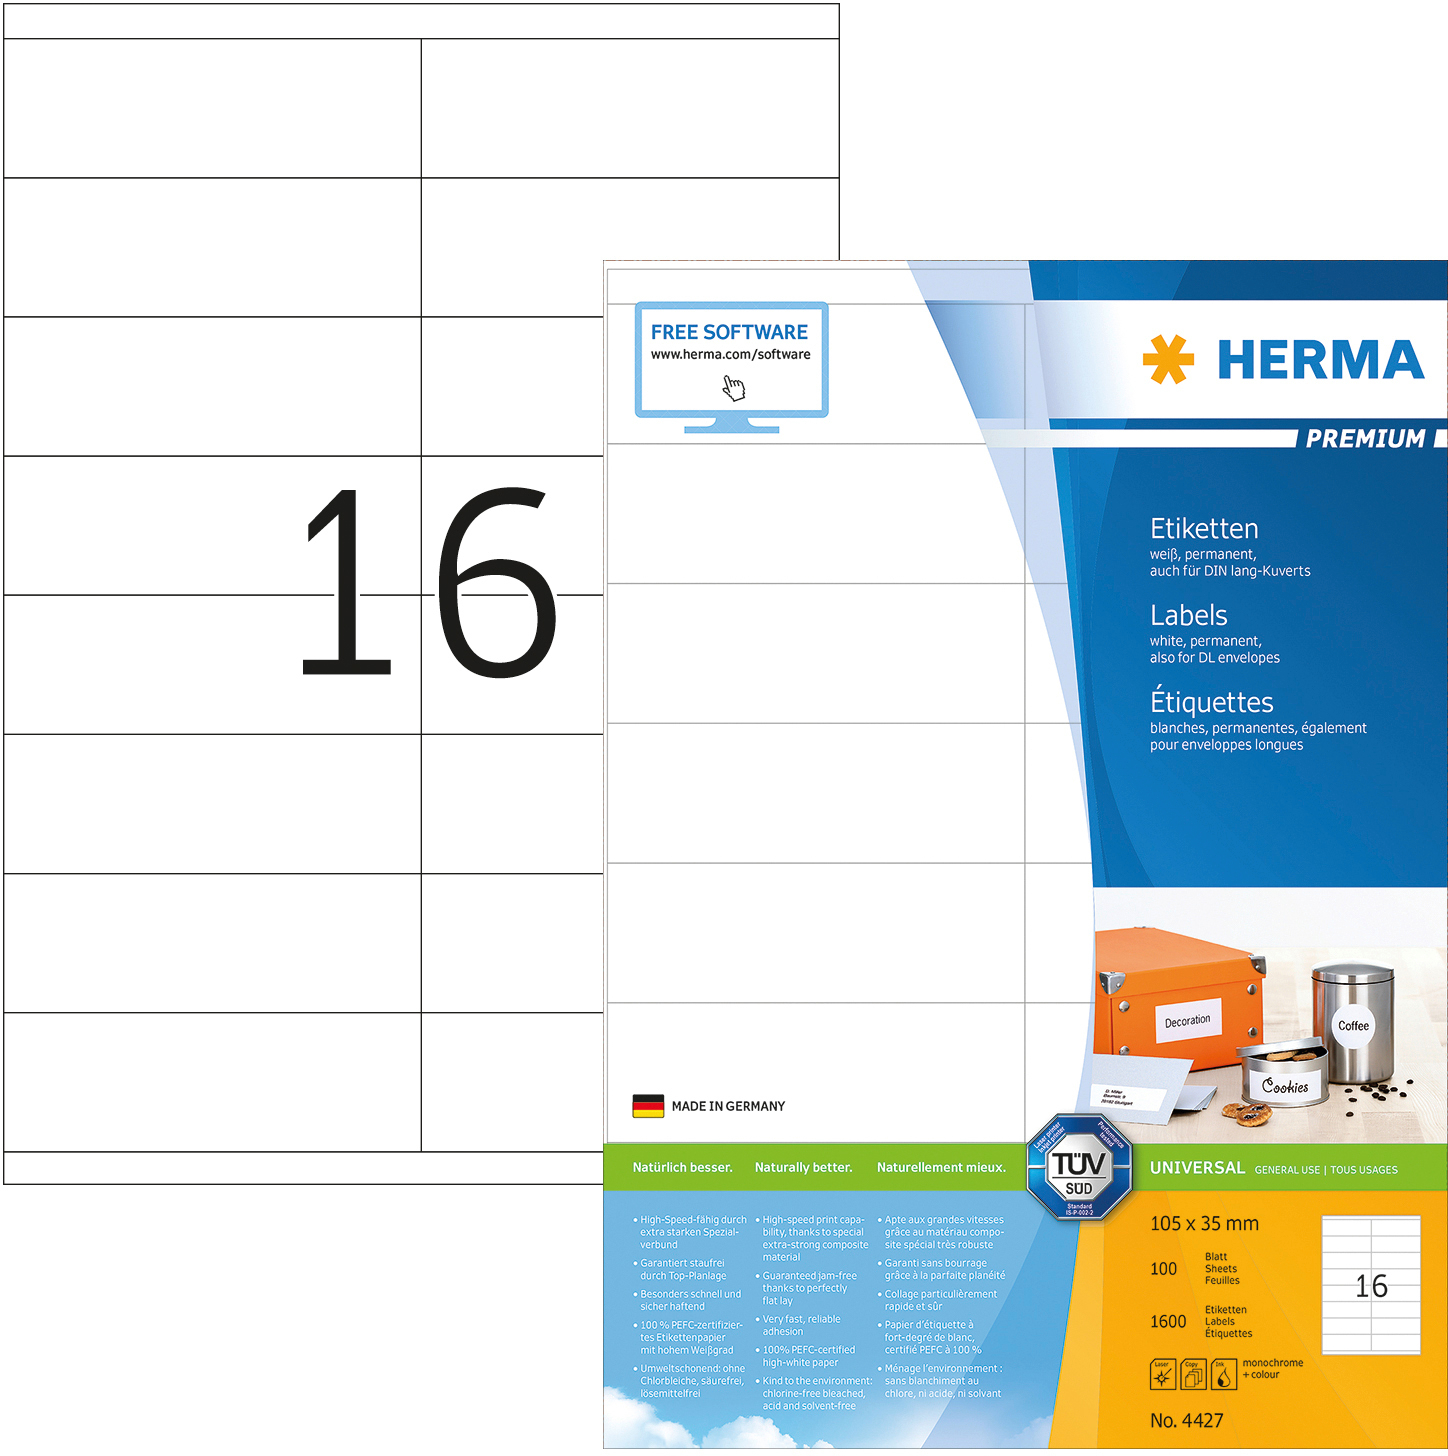 HERMA Etiquettes Premium 105×35mm 4427 blanc 1600 pcs.